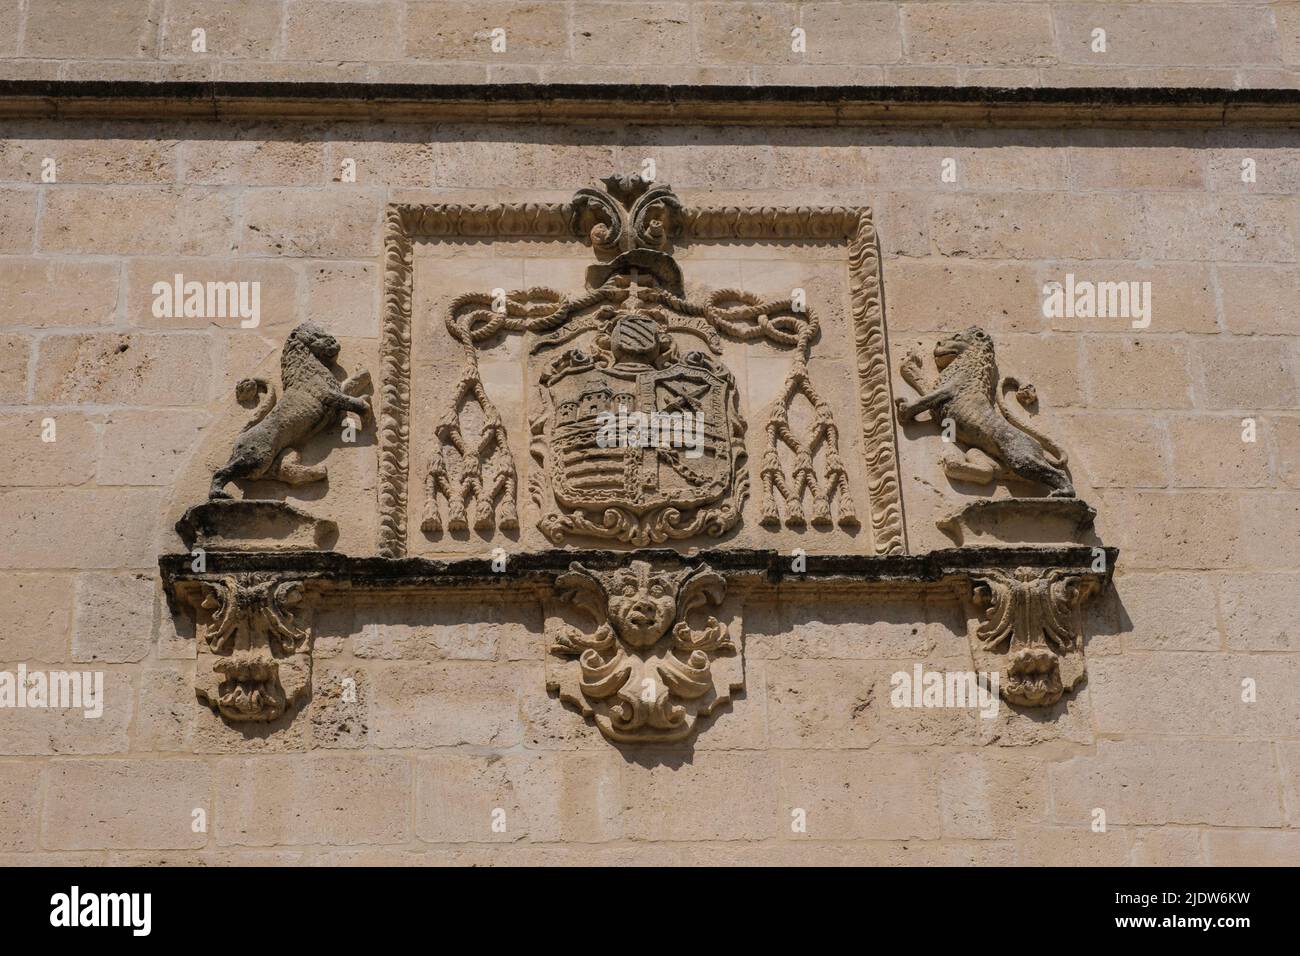 Espagne, Burgos. Cathédrale de Santa Maria, site classé au patrimoine mondial. Armoiries sur la façade extérieure. Banque D'Images